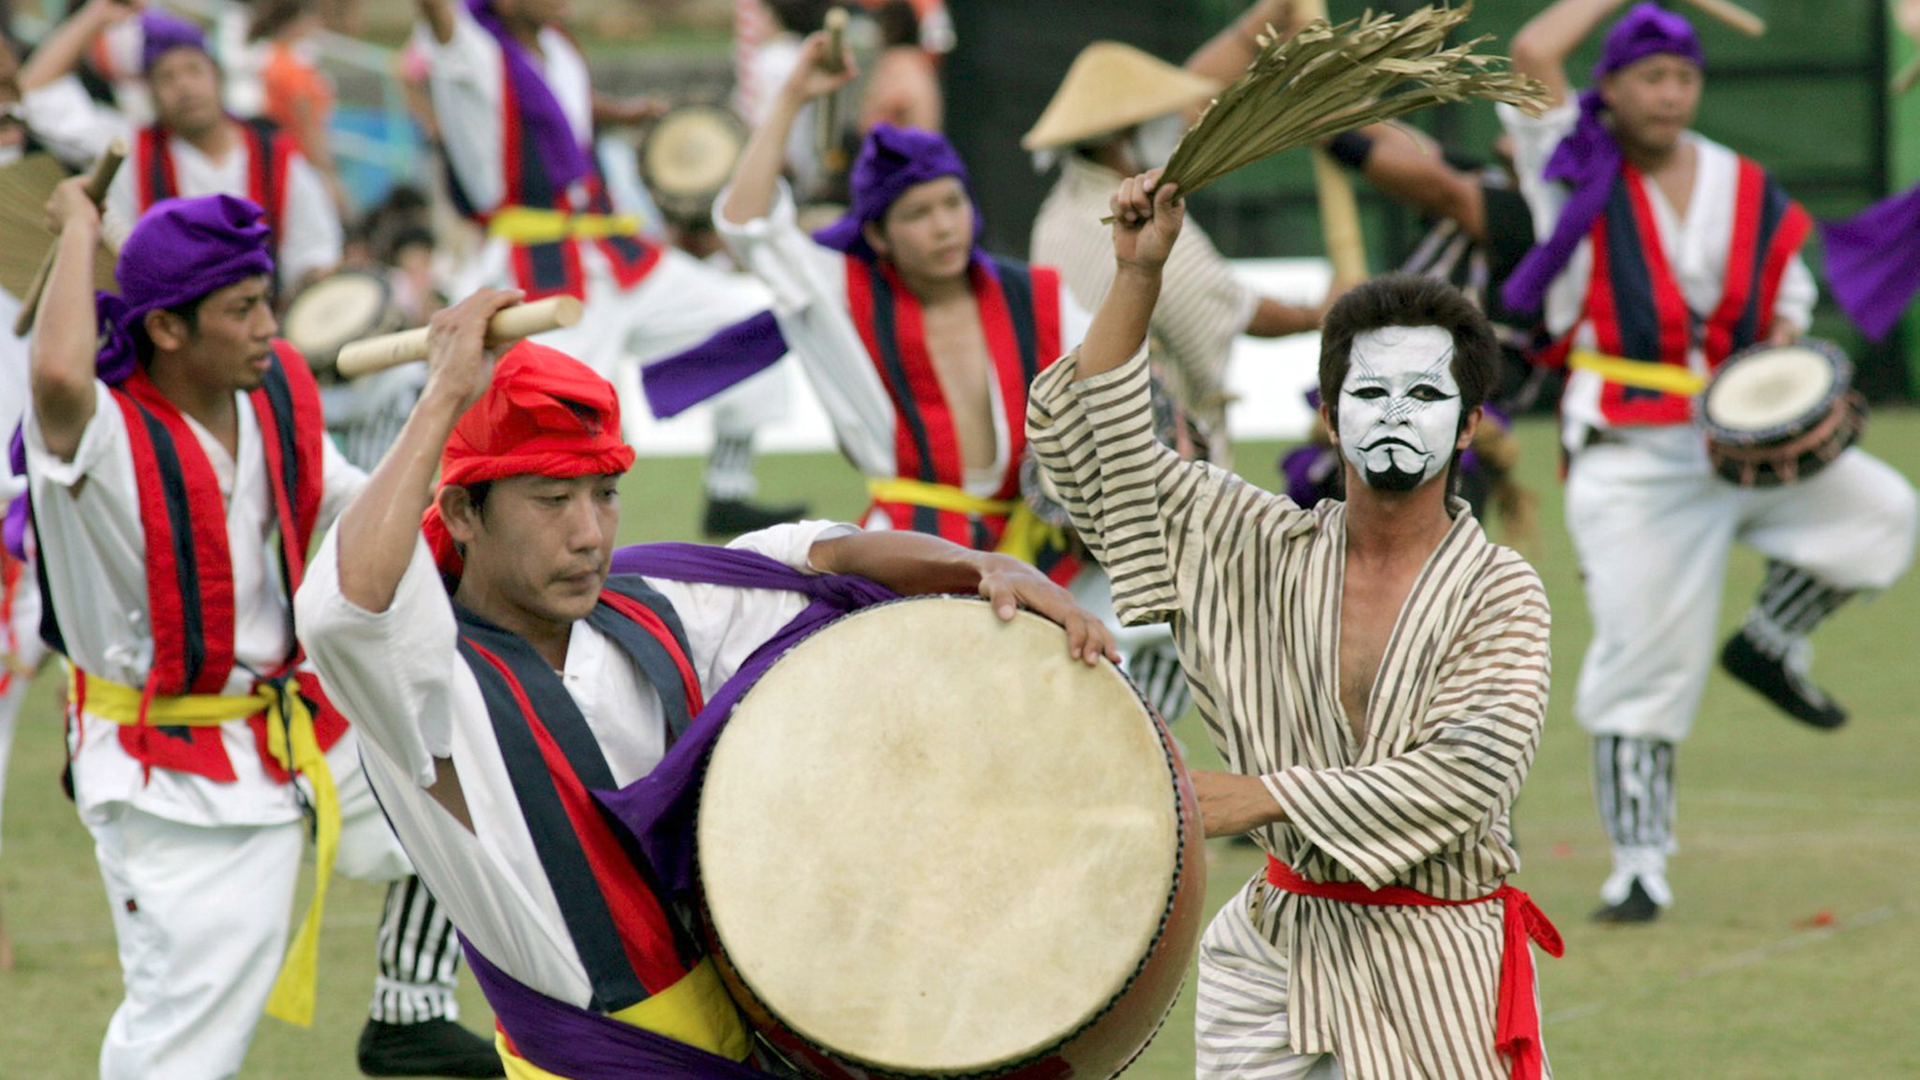 Tänzer von der Insel Okinawa performen während des 51. Eisa Festival im August 2006